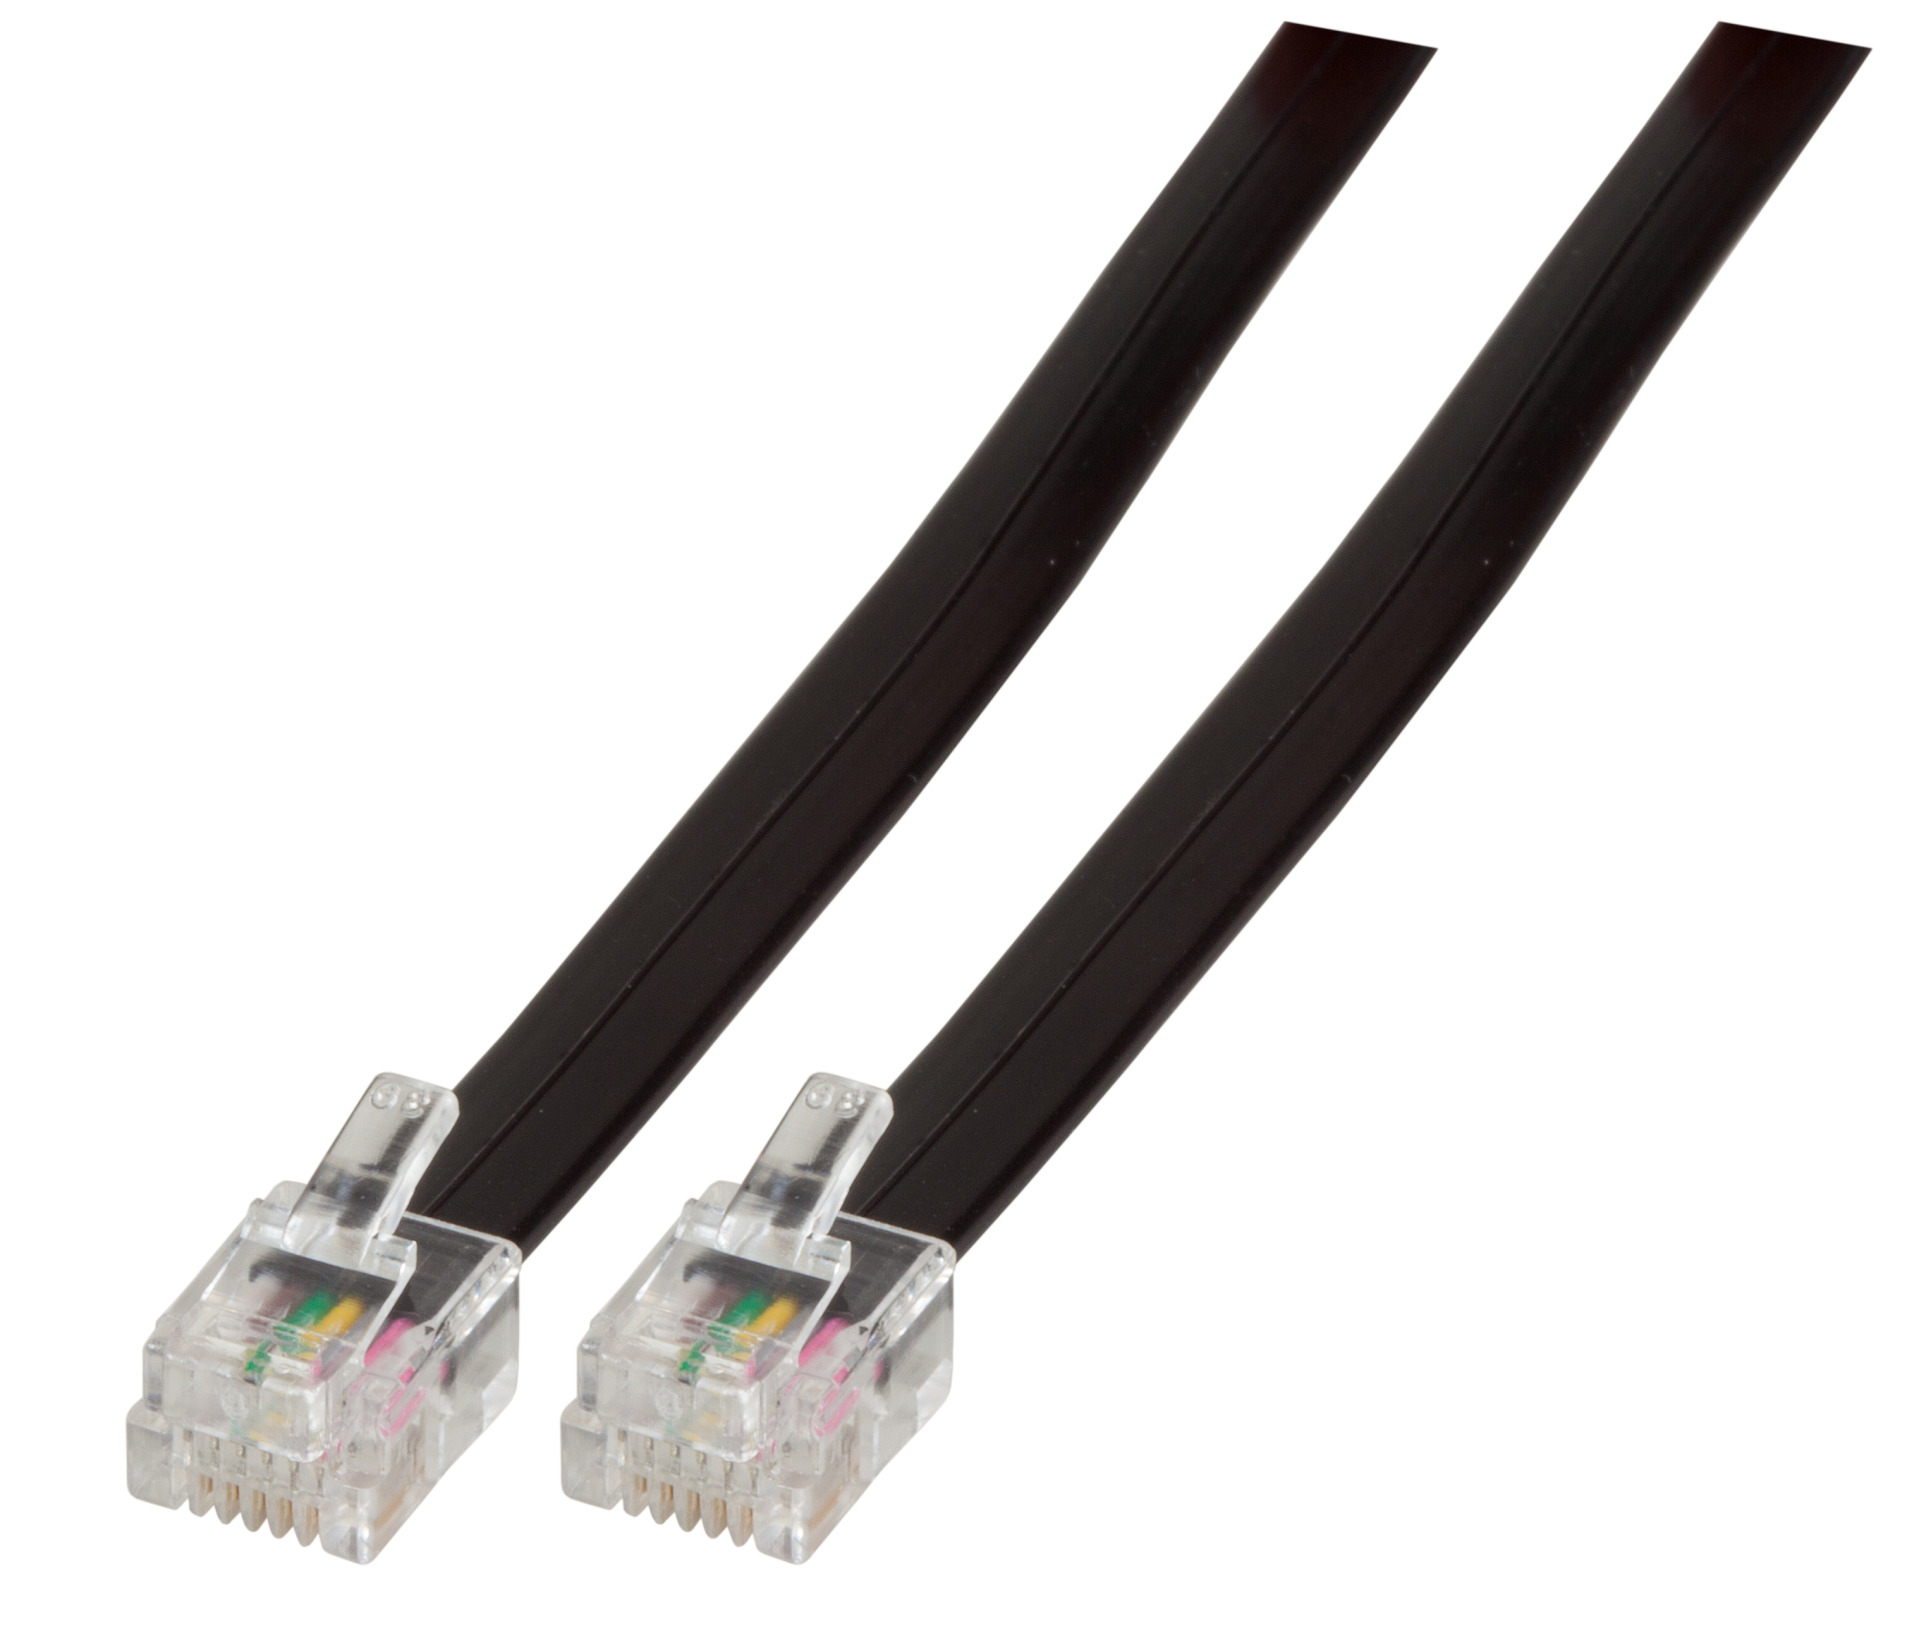 Modular Cable RJ12 (6/6) / RJ12 (6/6), 1:1, Black, 2 m